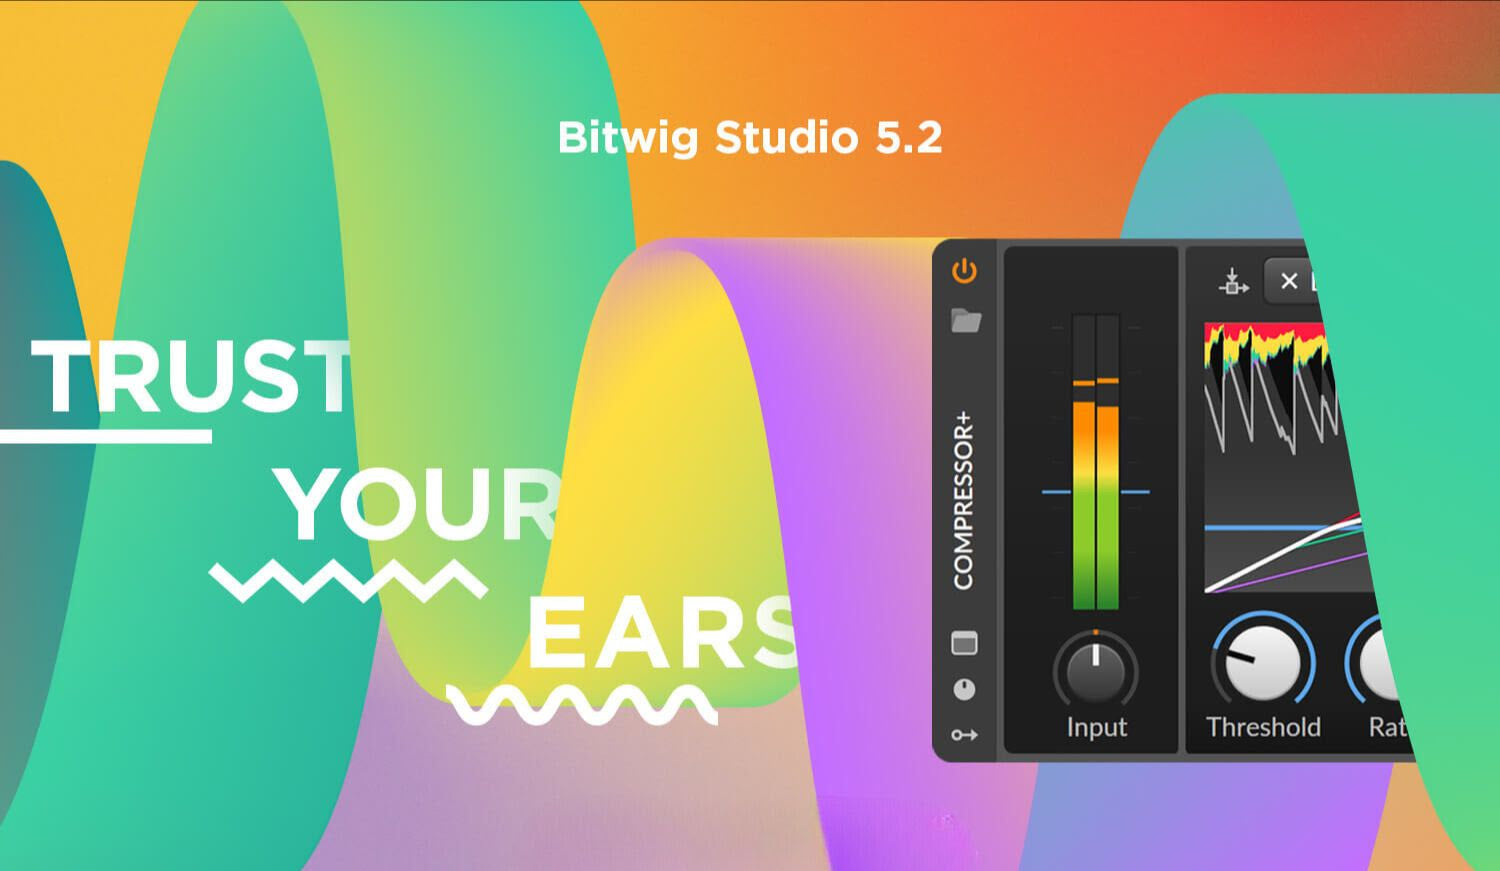 Bitwig Studio 5.2 Update Released